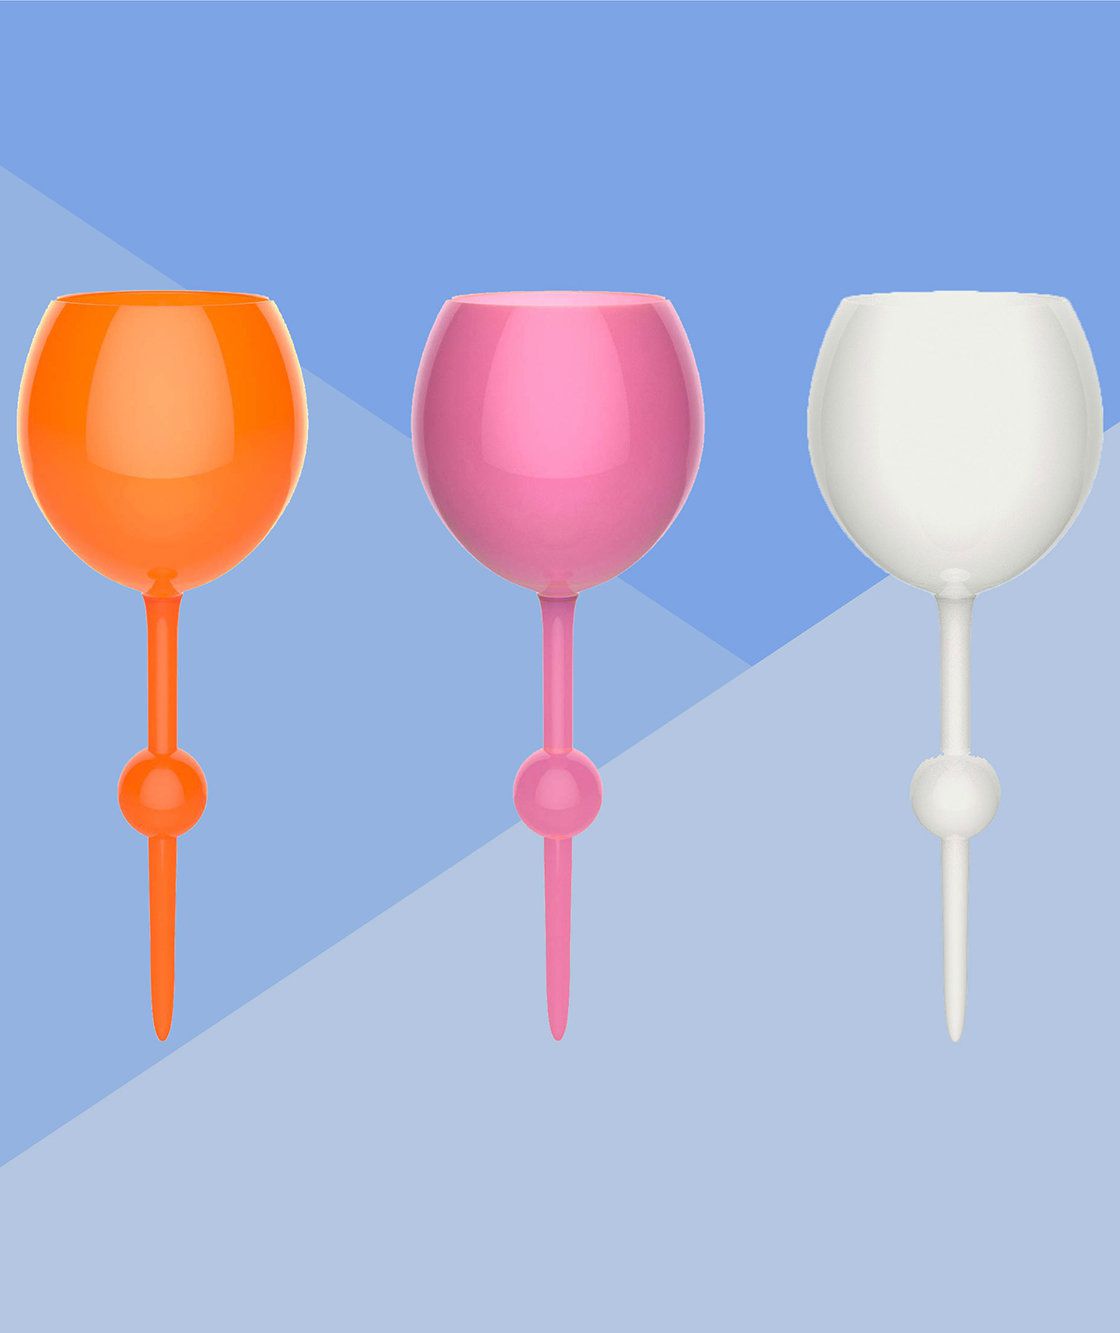 干杯!这些漂浮的、防溅的杯子让你在海滩和泳池里喝葡萄酒变得很容易亚搏电竞